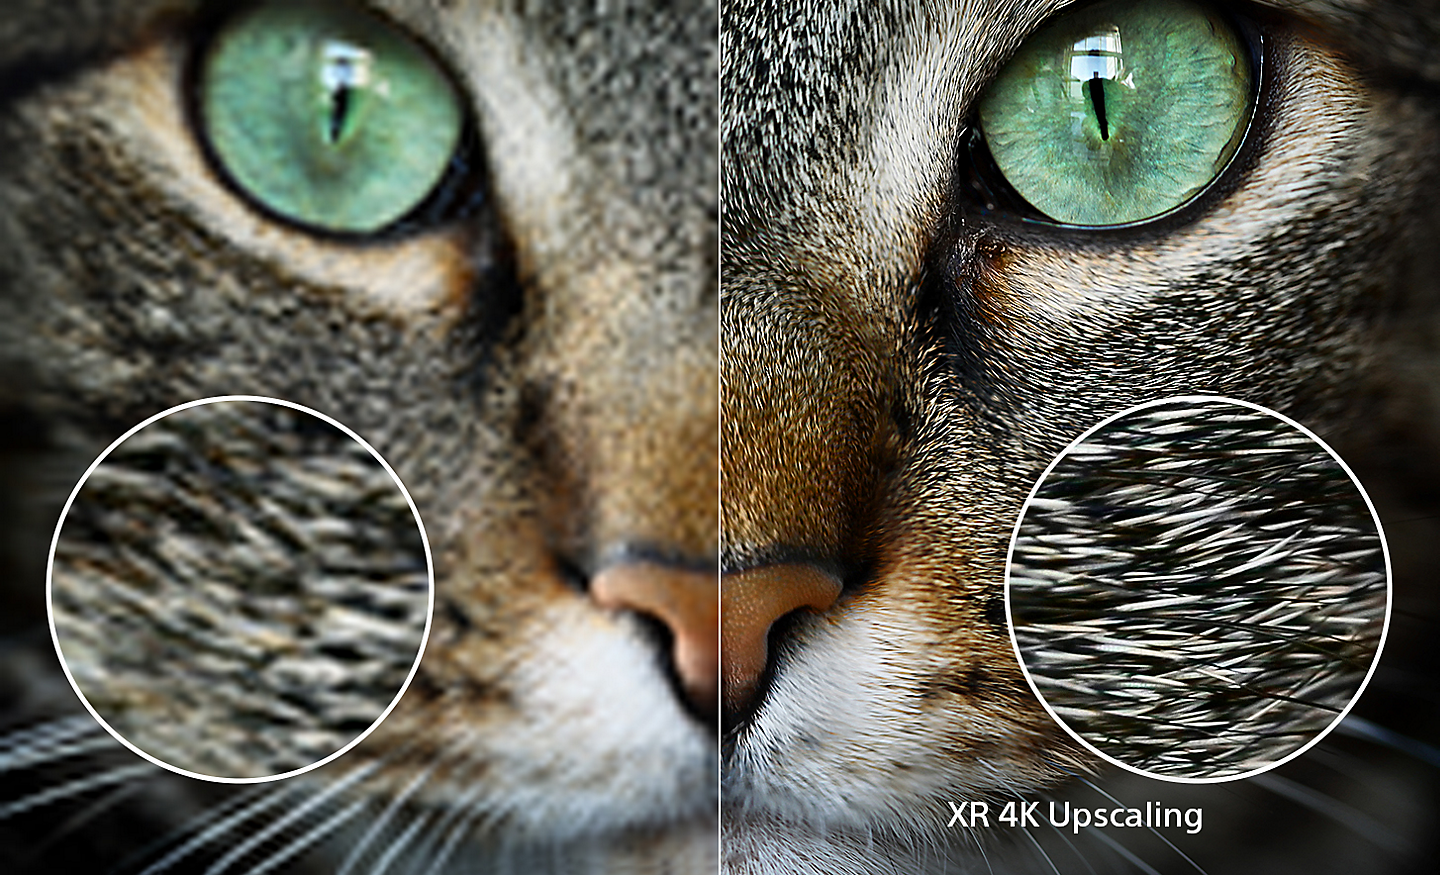 ภาพแยกหน้าจอศีรษะของแมวโดยด้านขวาแสดงรายละเอียดเพิ่มเติมหลังจากเพิ่มสเกล XR 4K